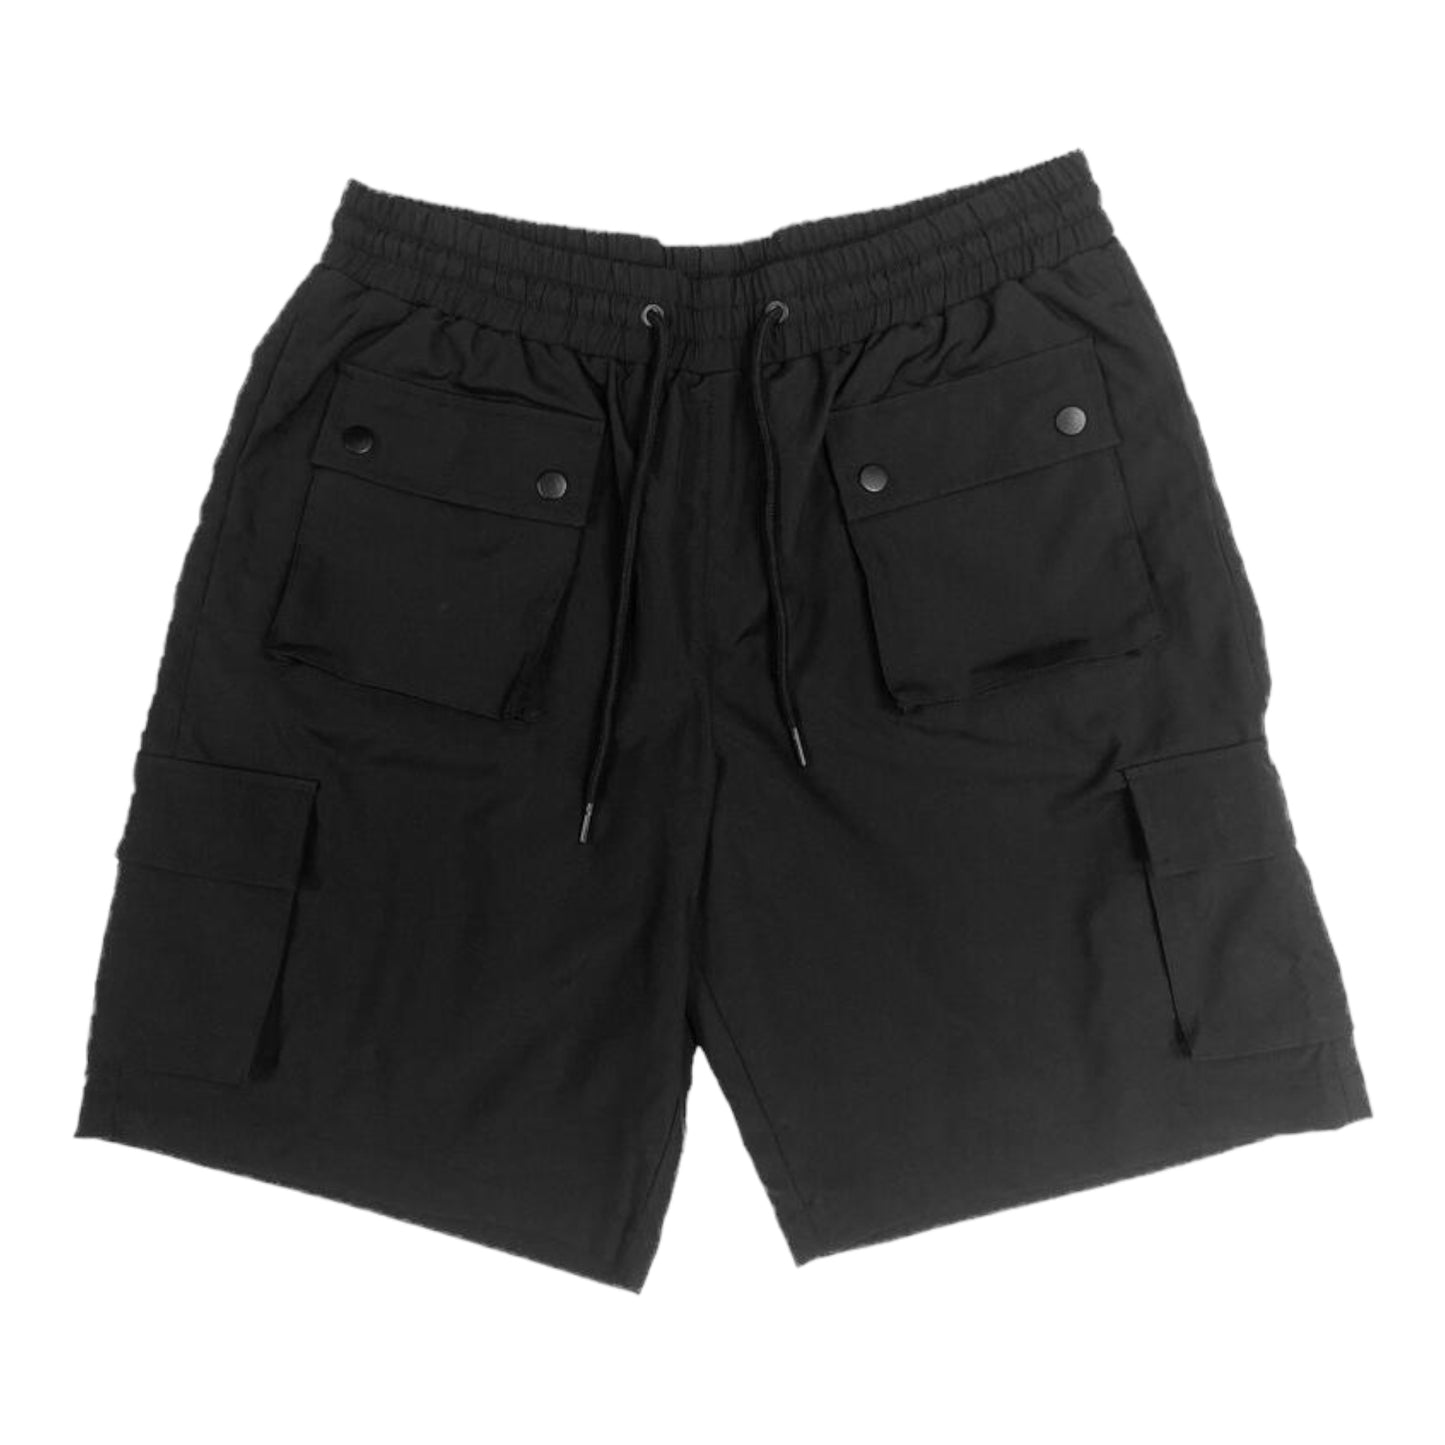 M. SOCIETY: Nylon Cargo Shorts 23513